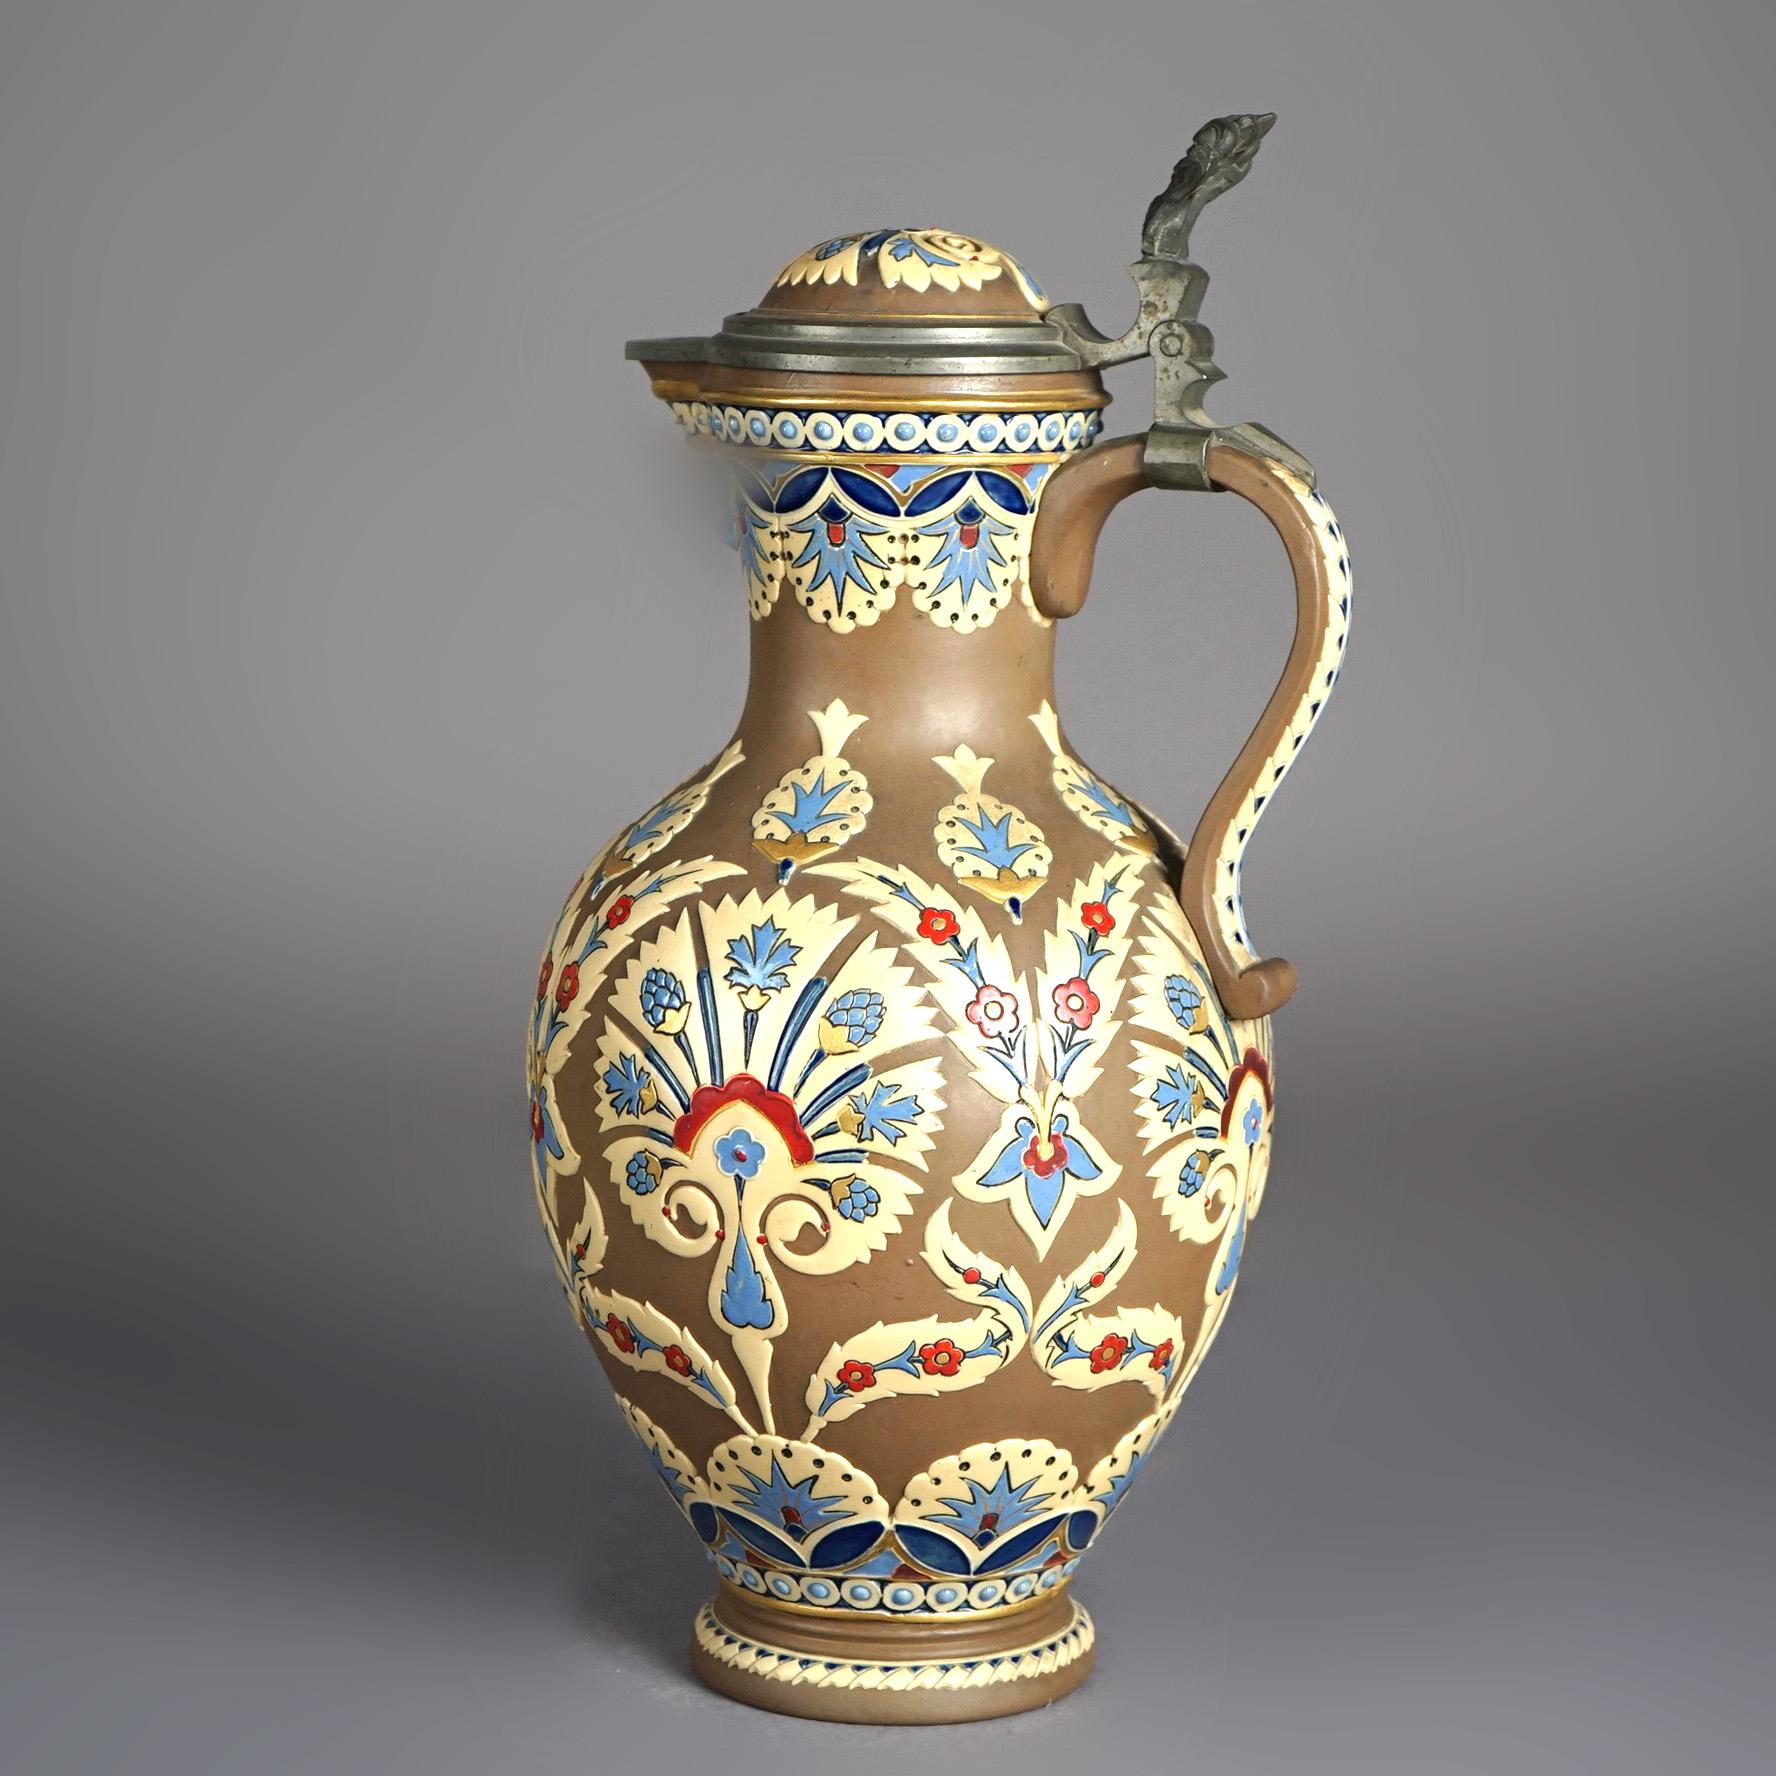 Antike Villeroy & Bach Mettlach Ästhetische Keramik Krug mit stilisierten Blumen C1890

Maße - 14,75 